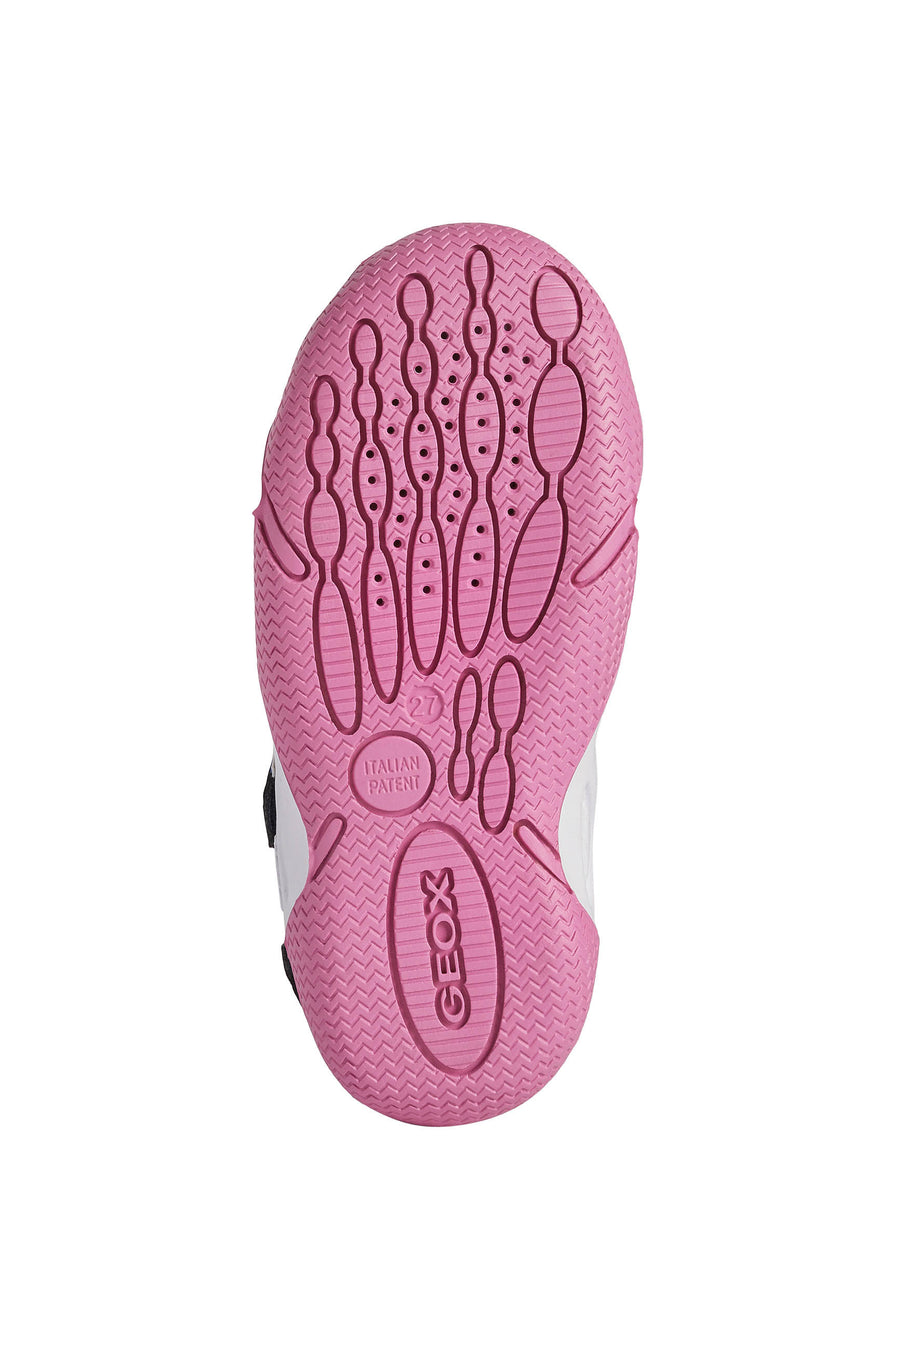 Geox Wader Waterproof Sandal | Navy & Pink